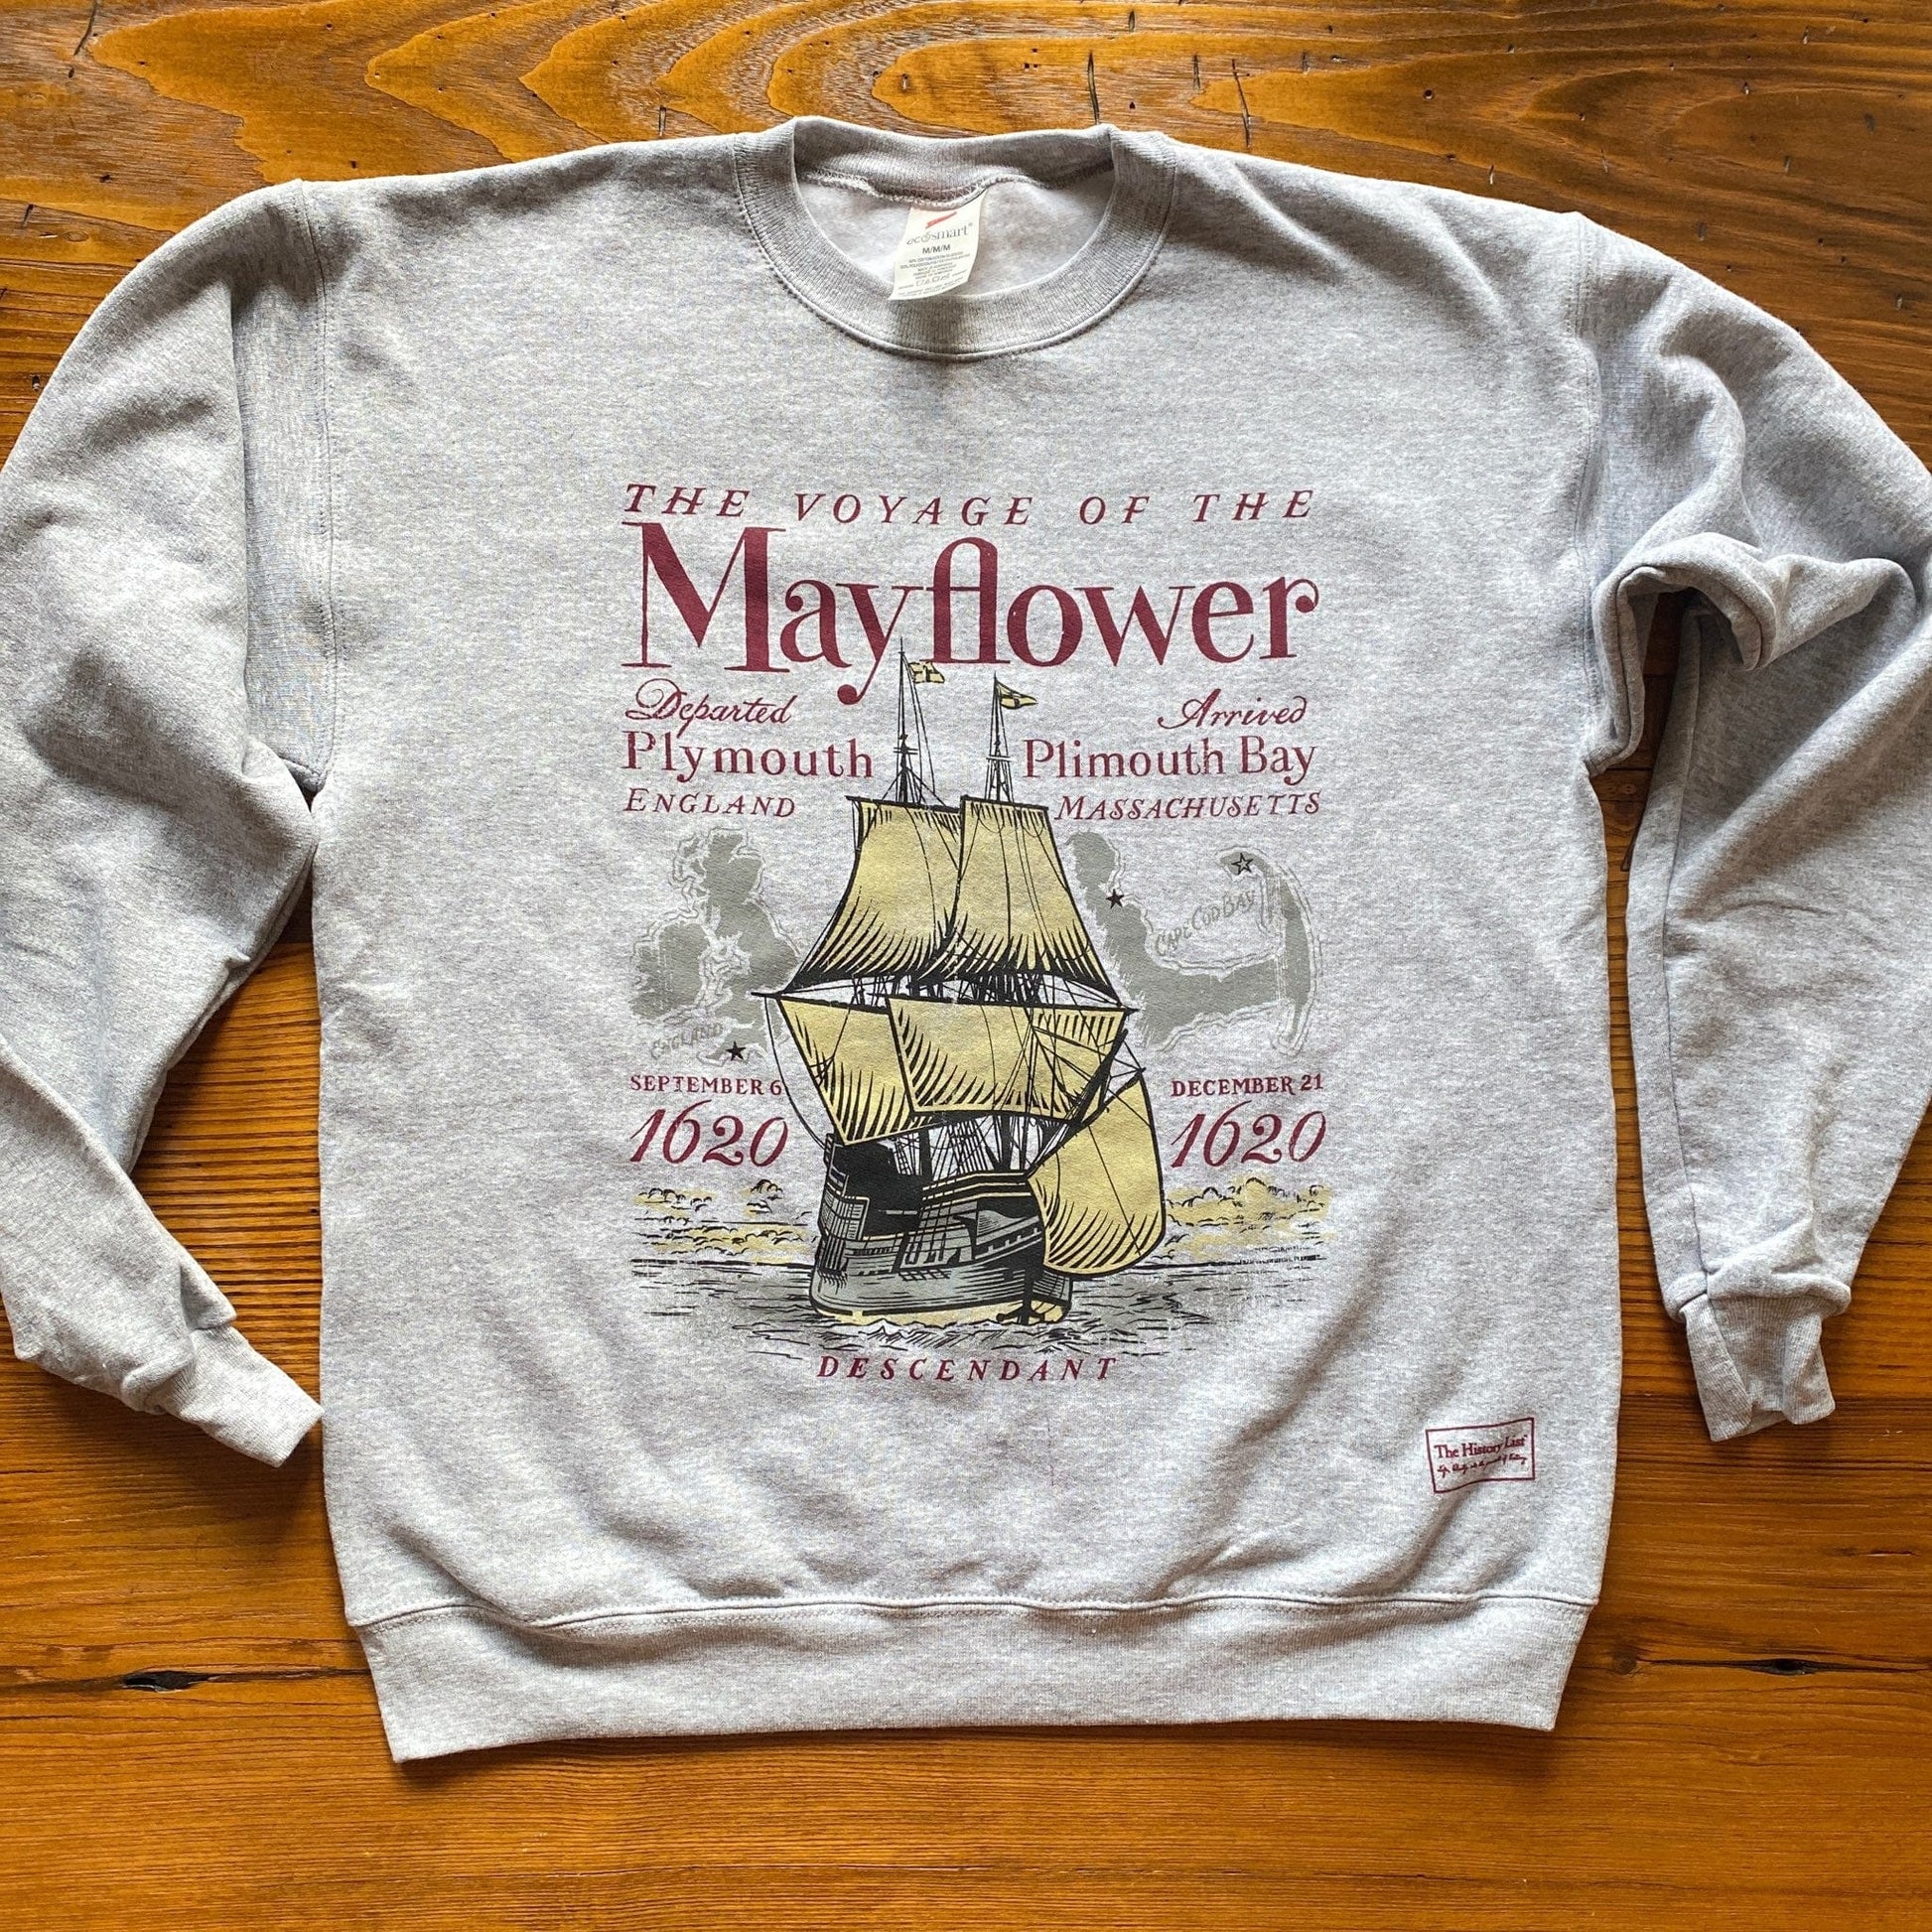 Mayflower Supply Company Logo